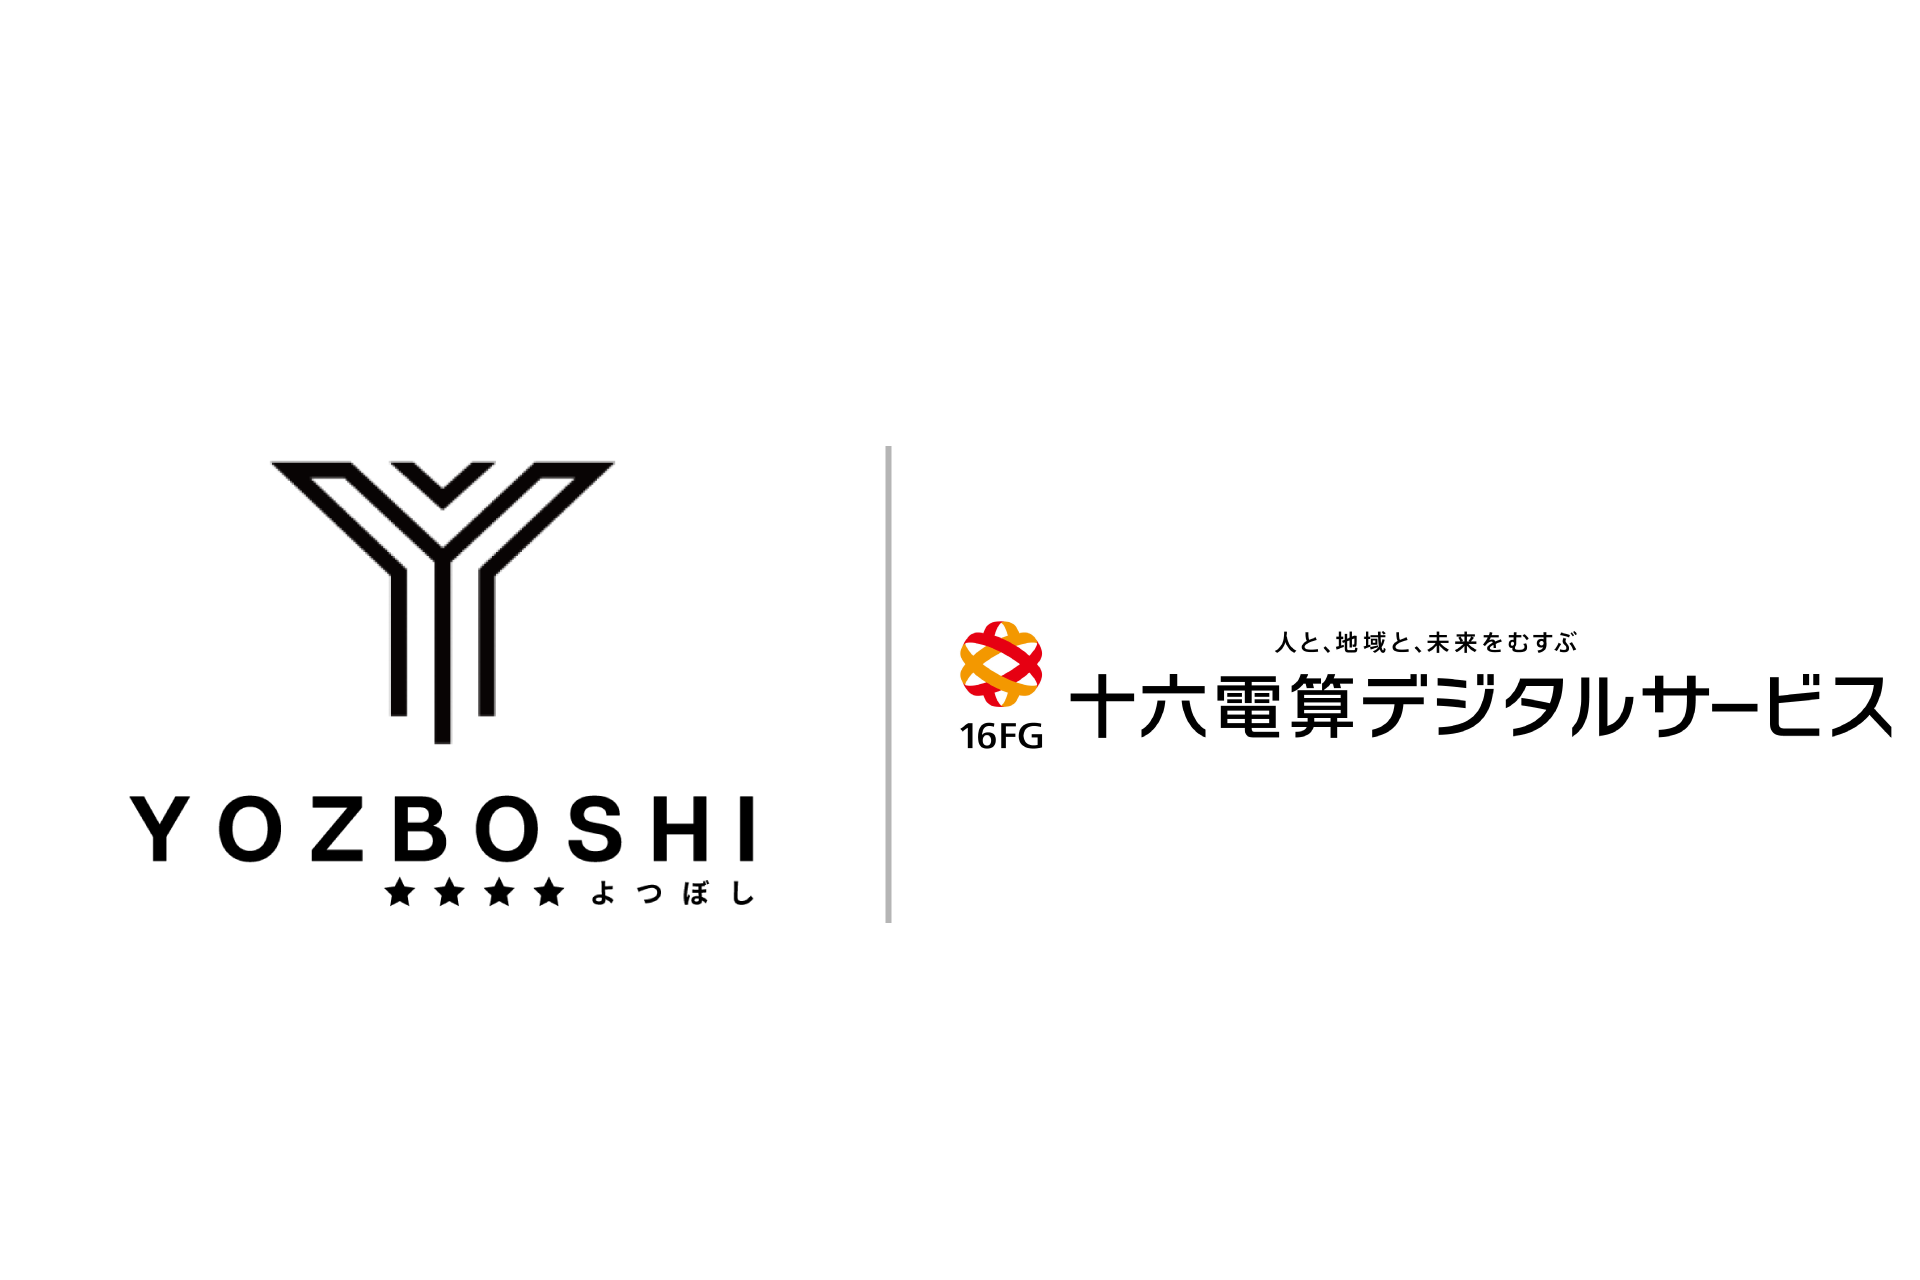 丸投げ電子帳簿保存法対応サービス「Connected Base」を提供する株式会社YOZBOSHIと十六電算デジタルサービス株式会社が地域のDX課題解決に向けて業務提携を開始